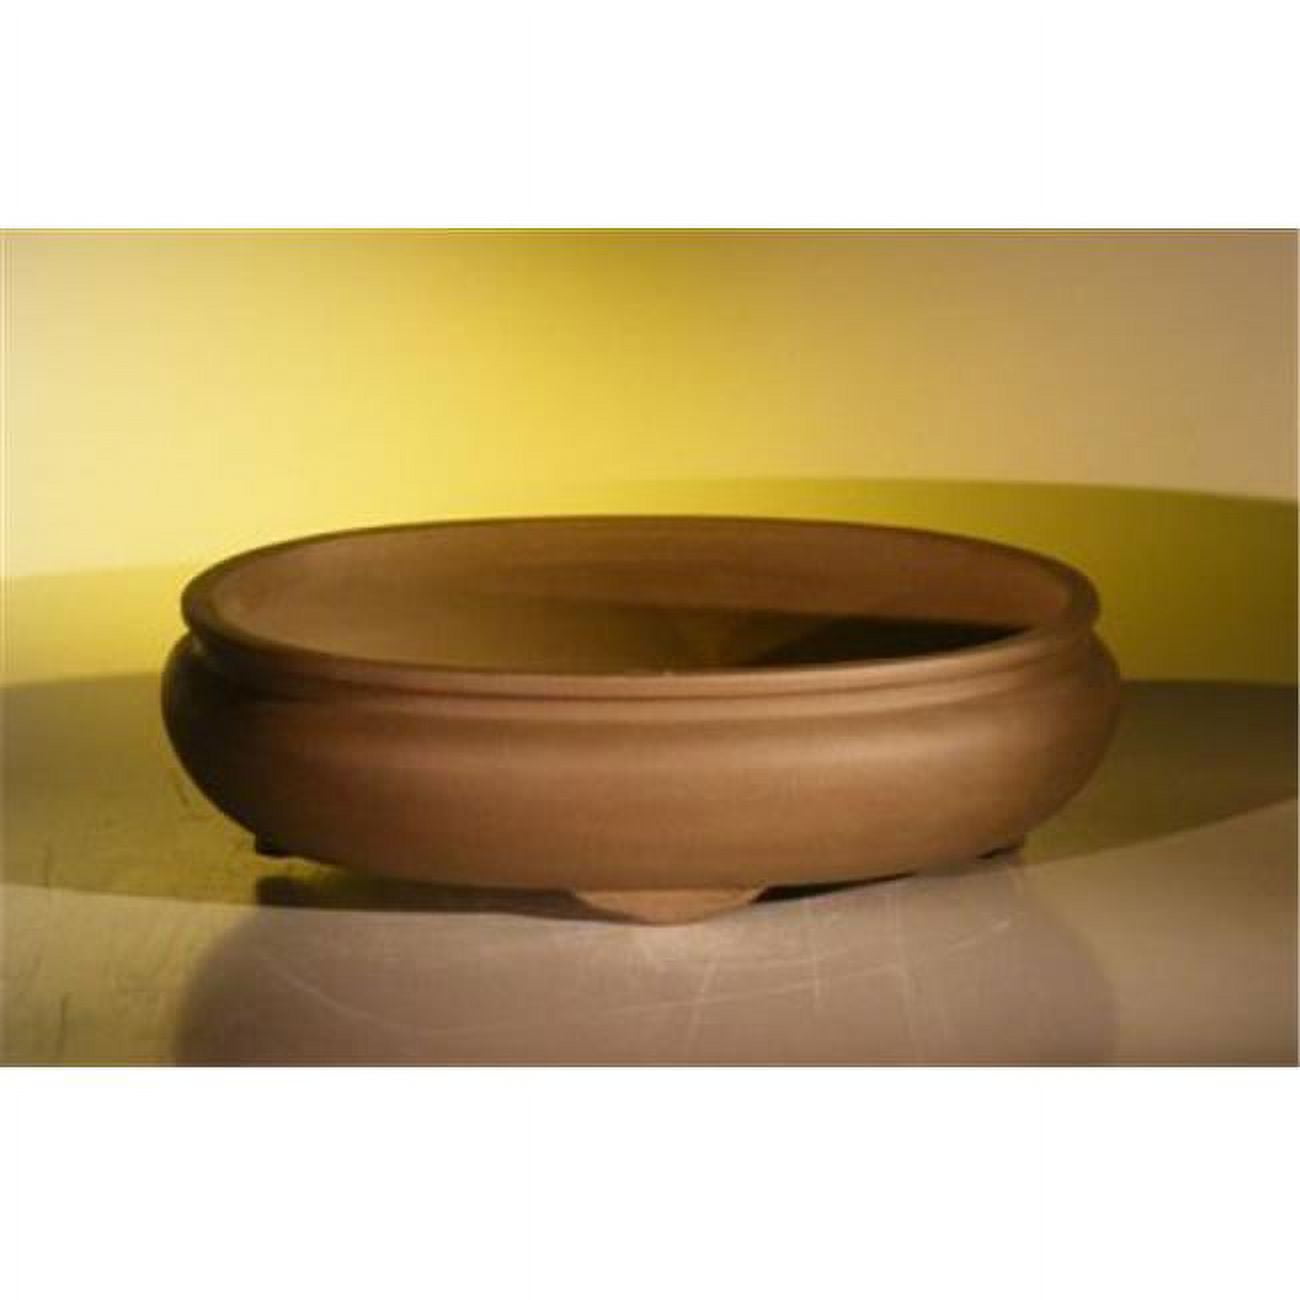 Bonsai Boy L294 14.125 x 11 x 4 in. Unglazed Ceramic Bonsai Pot, Tan - Oval